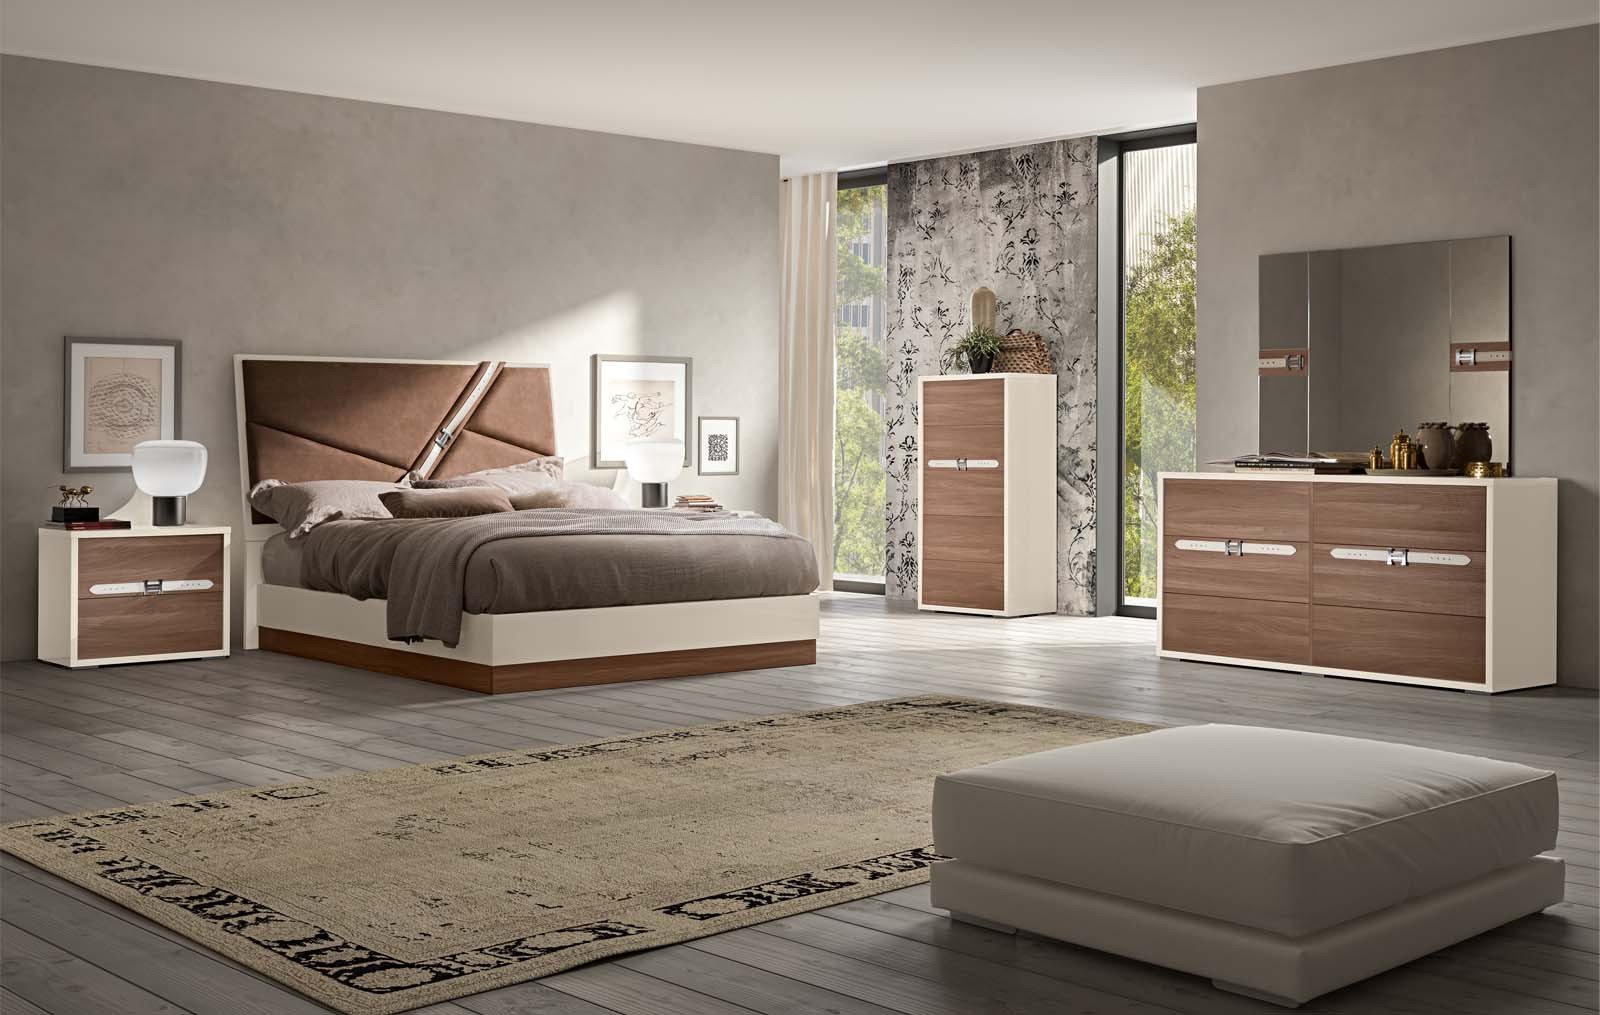 Modern King Size Bedroom Set Luxury Evolution Bedroom Modern Bedrooms Bedroom Furniture